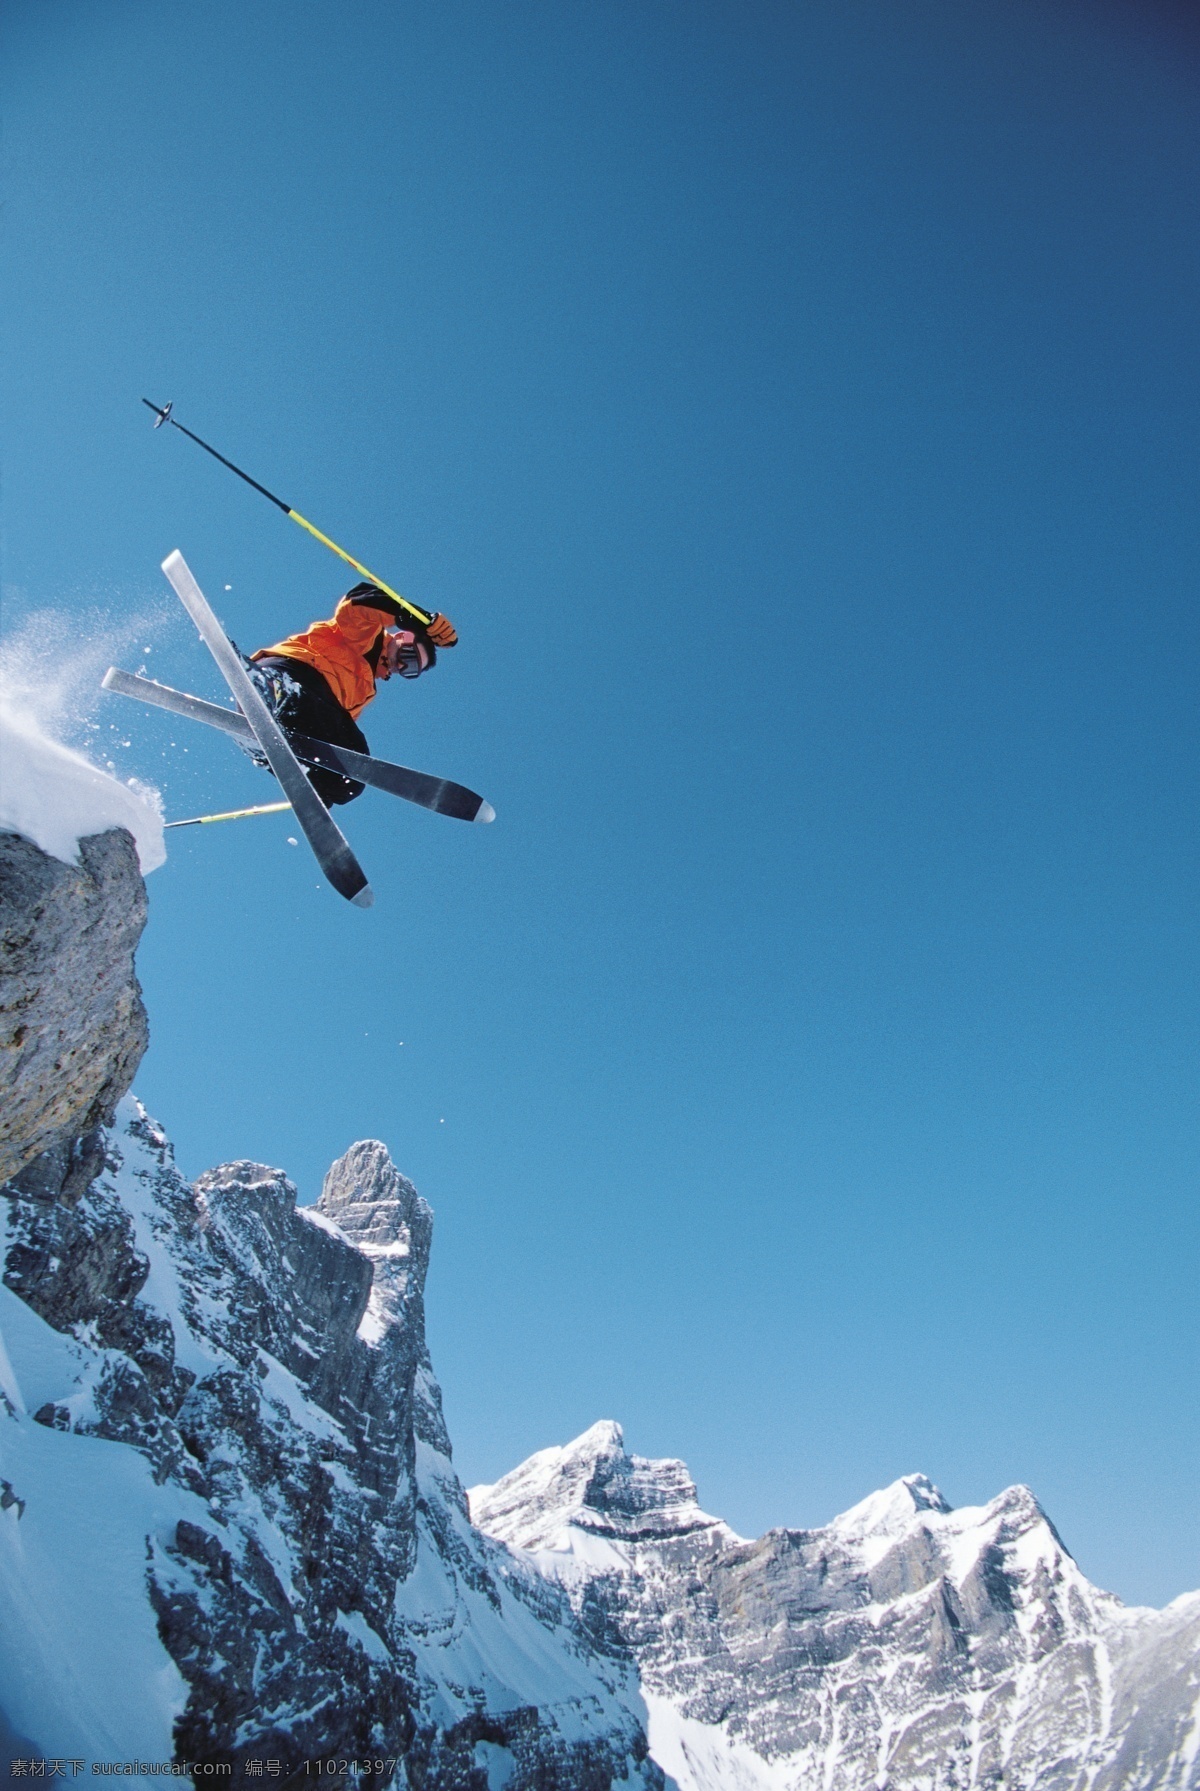 高山 划 雪 运动 图 高山划雪运动 极限运动 运动图片 双板滑雪 雪山 风景 腾空 跳跃 生活百科 摄影图片 高清图片 体育运动 蓝色